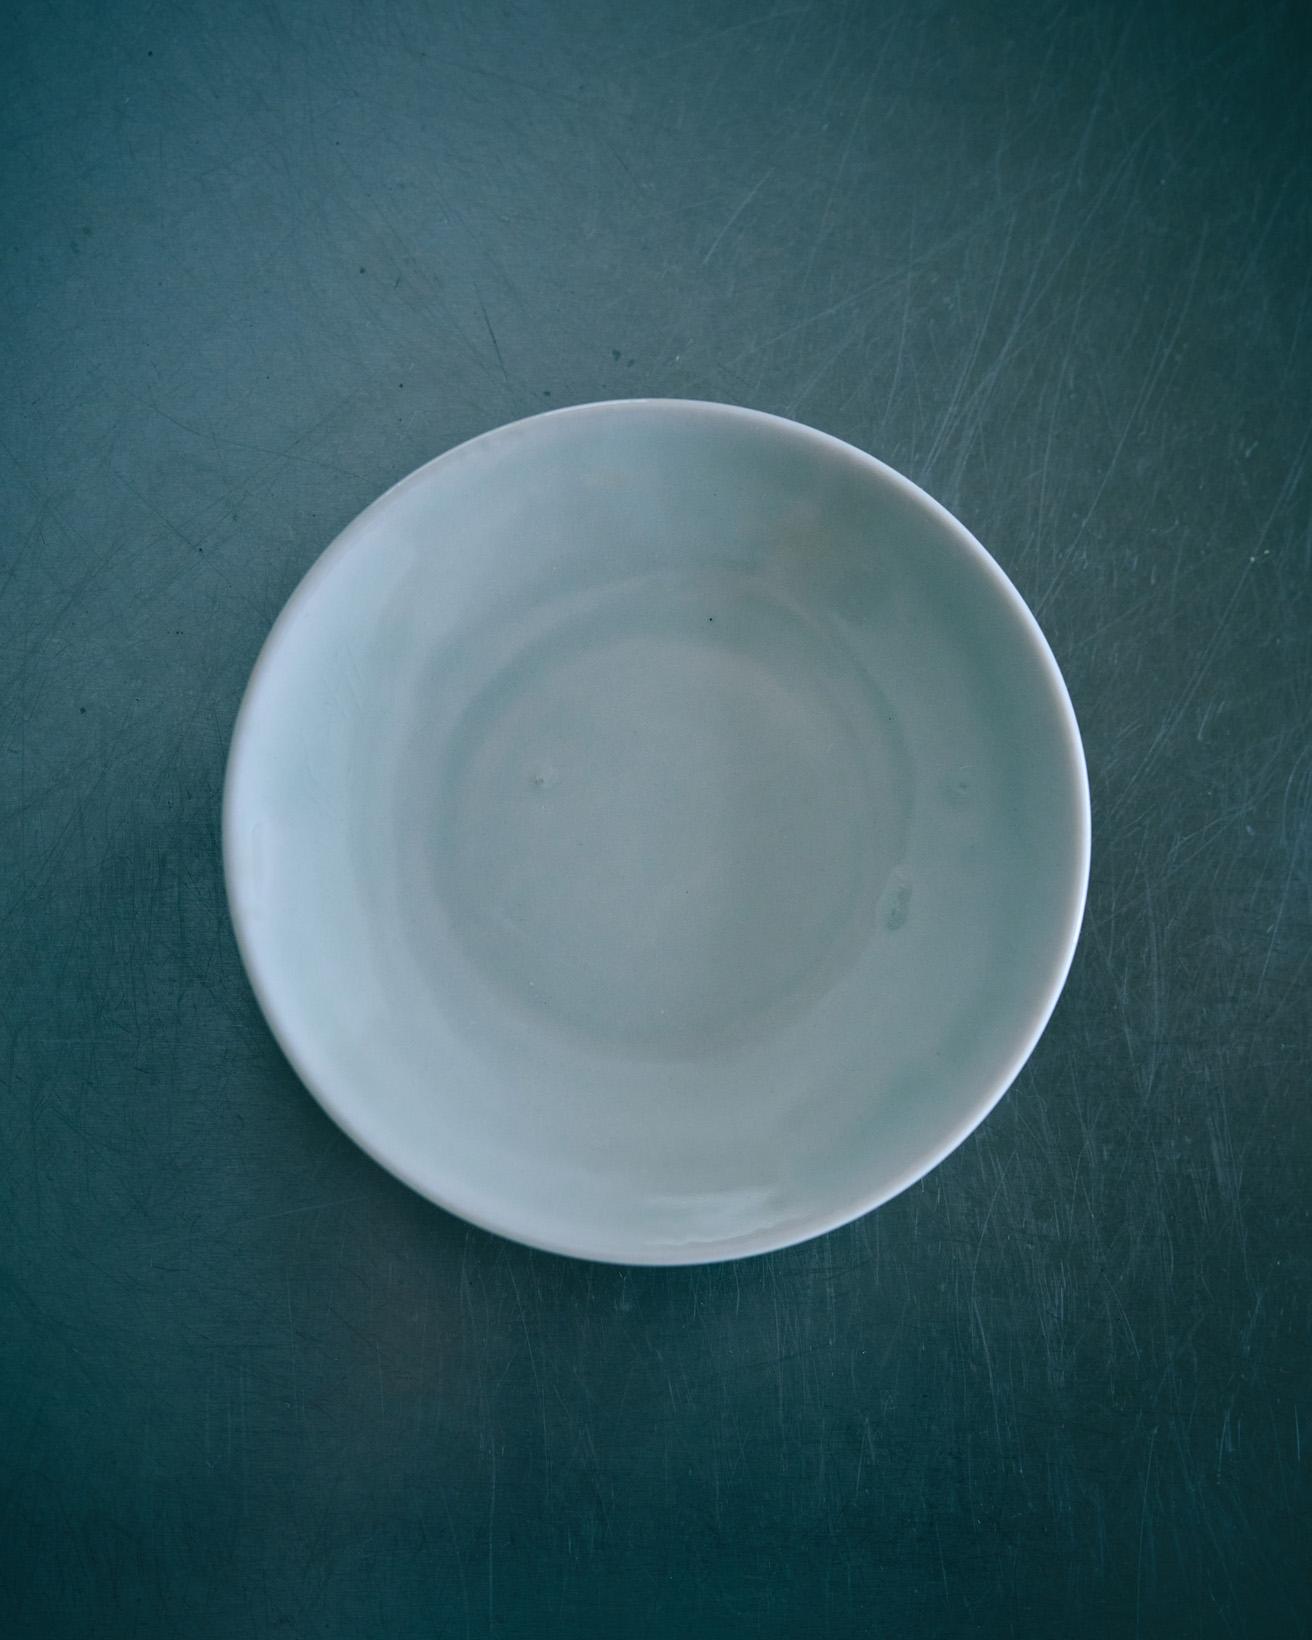 広島で作陶する寒川義雄さんのお皿です。青磁っぽい色と細いエッジで、儚い感じのお皿ですが、シミにならず、蒸しものの台皿として使うこともでき、電子レンジにも気にせず使える。見た目とは裏腹の使い勝手の良さが魅力です。